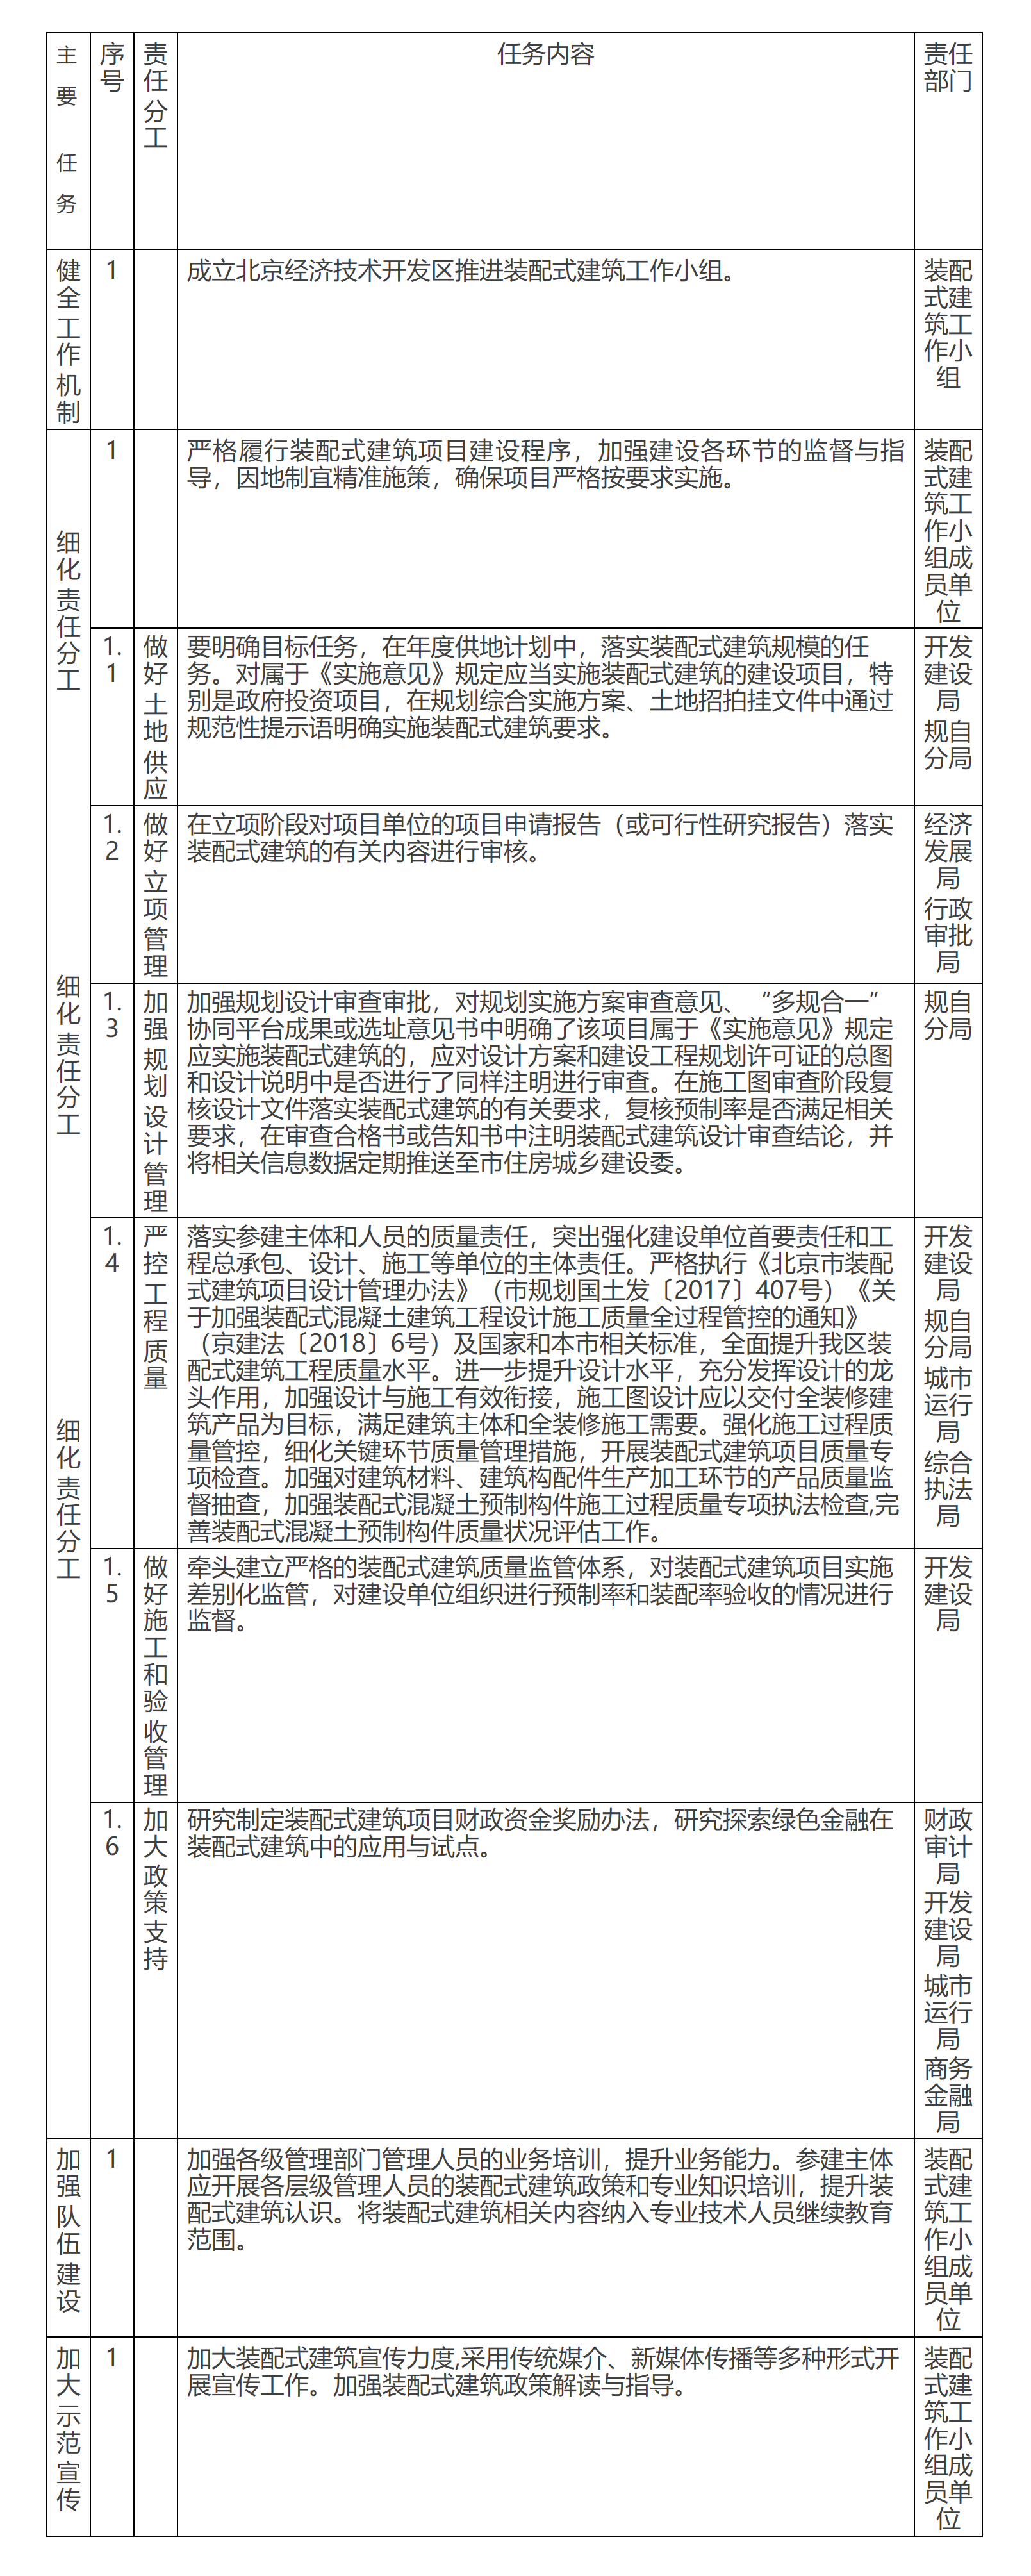 附表：《北京经济技术开发区关于发展装配式建筑的实施意见》责任分工细化表